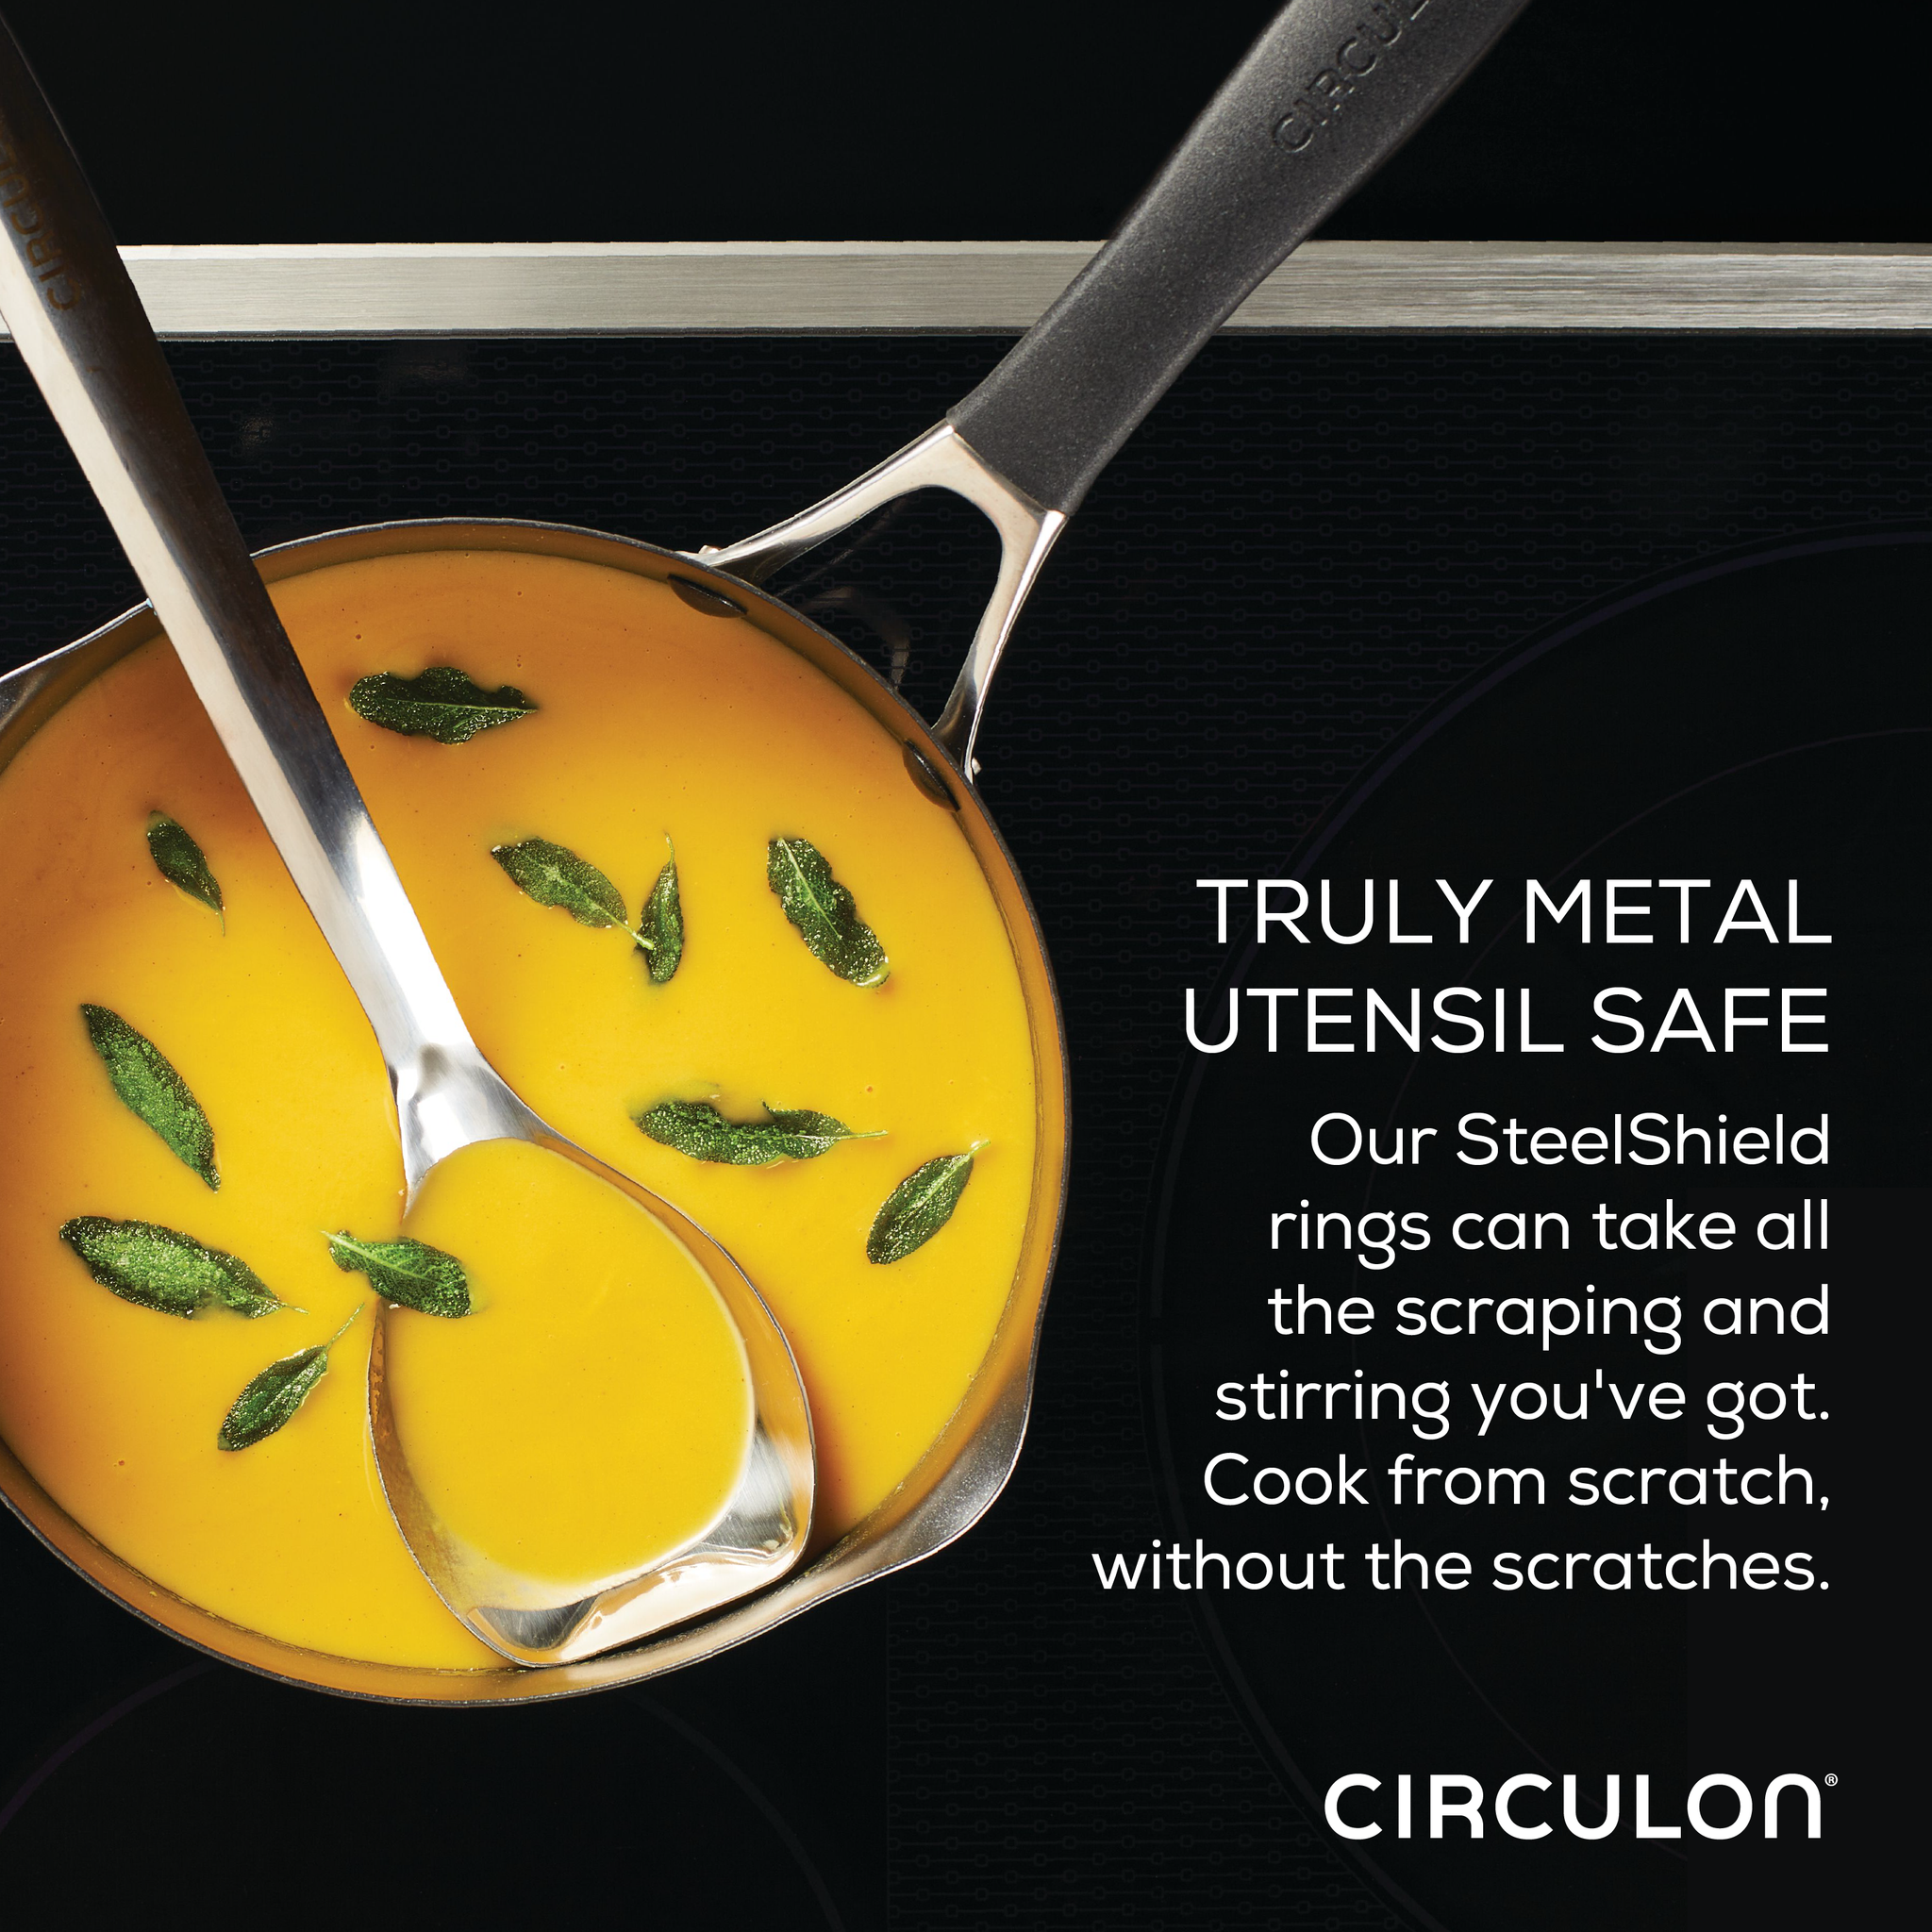 3-Quart Nonstick Straining Saucepan – Circulon